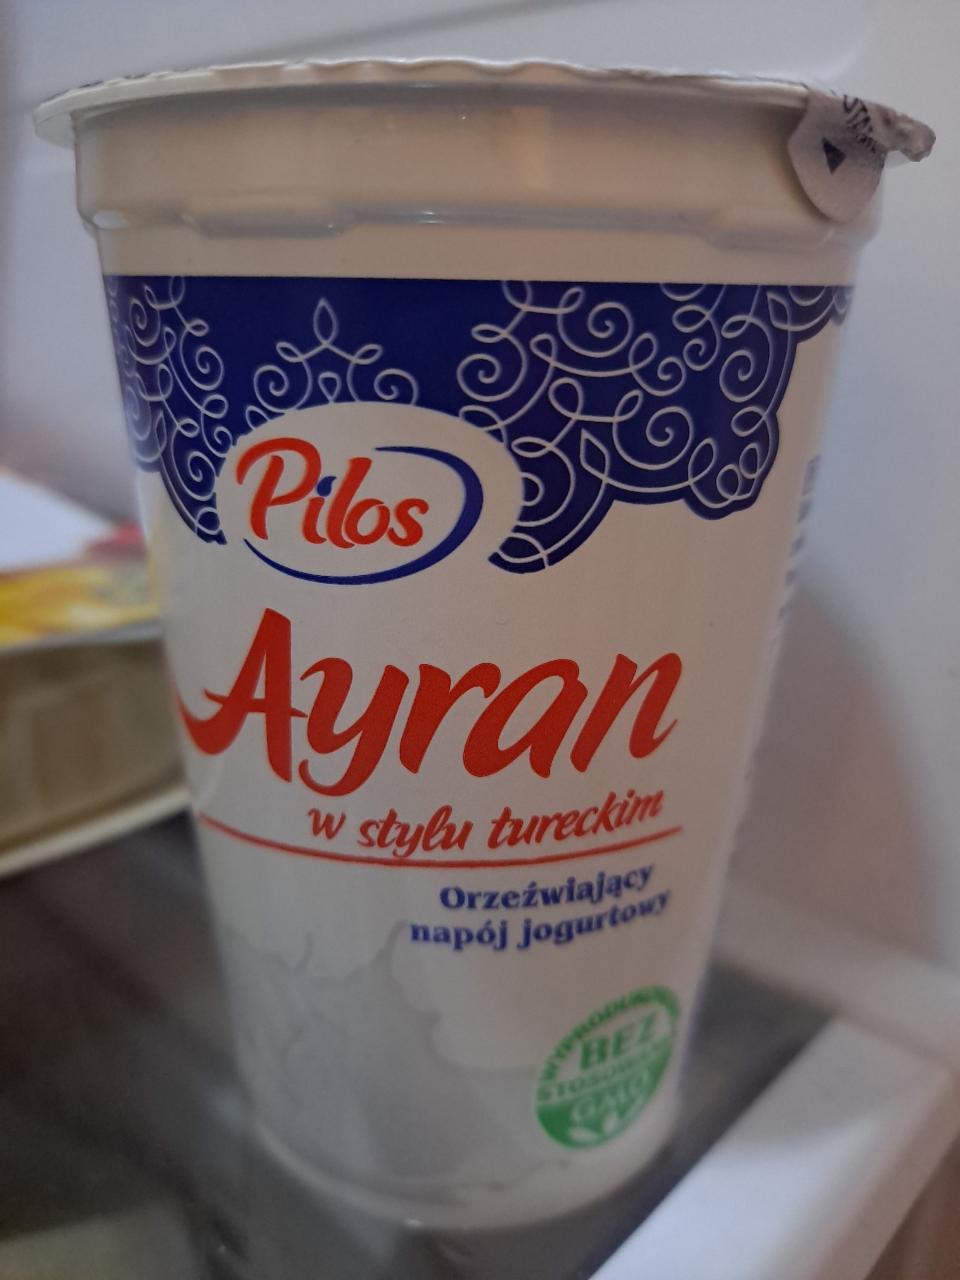 Zdjęcia - Ayran w stylu tureckim Pilos